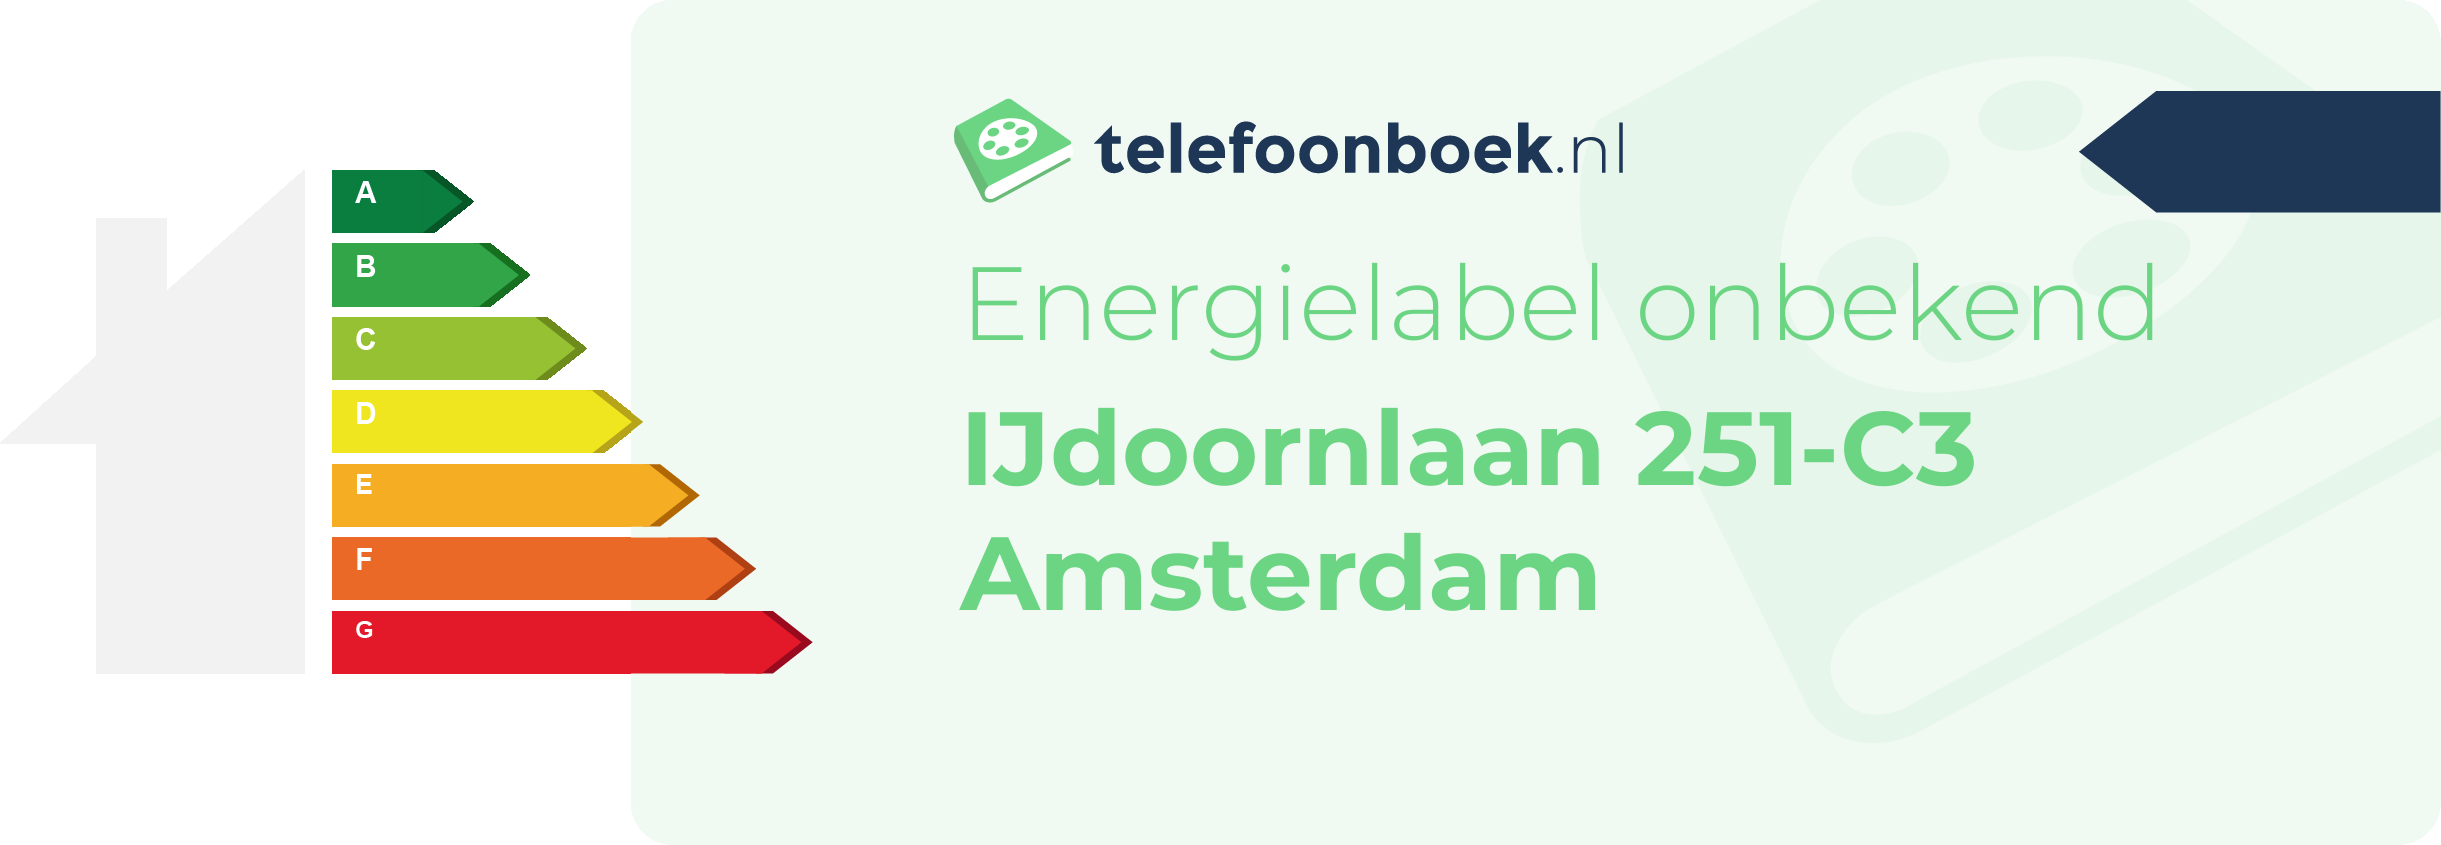 Energielabel IJdoornlaan 251-C3 Amsterdam